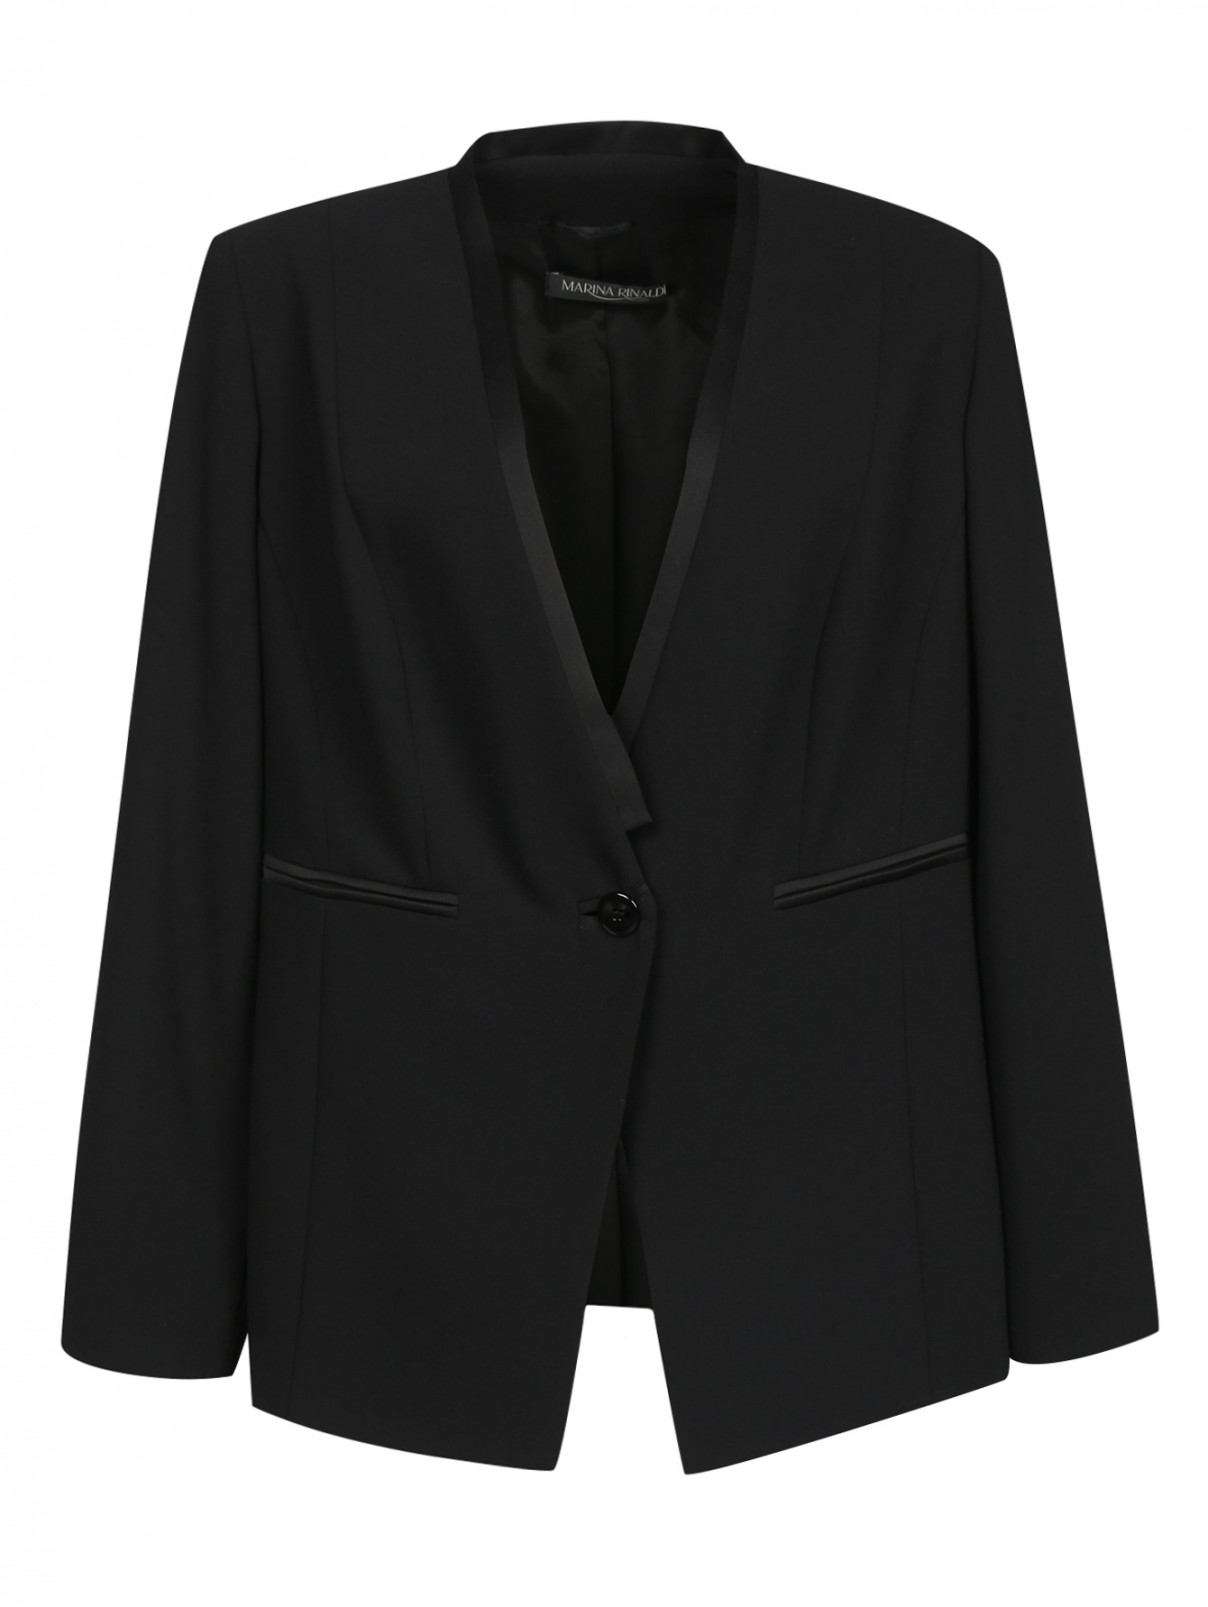 Однобортный жакет с боковыми карманами Marina Rinaldi  –  Общий вид  – Цвет:  Черный